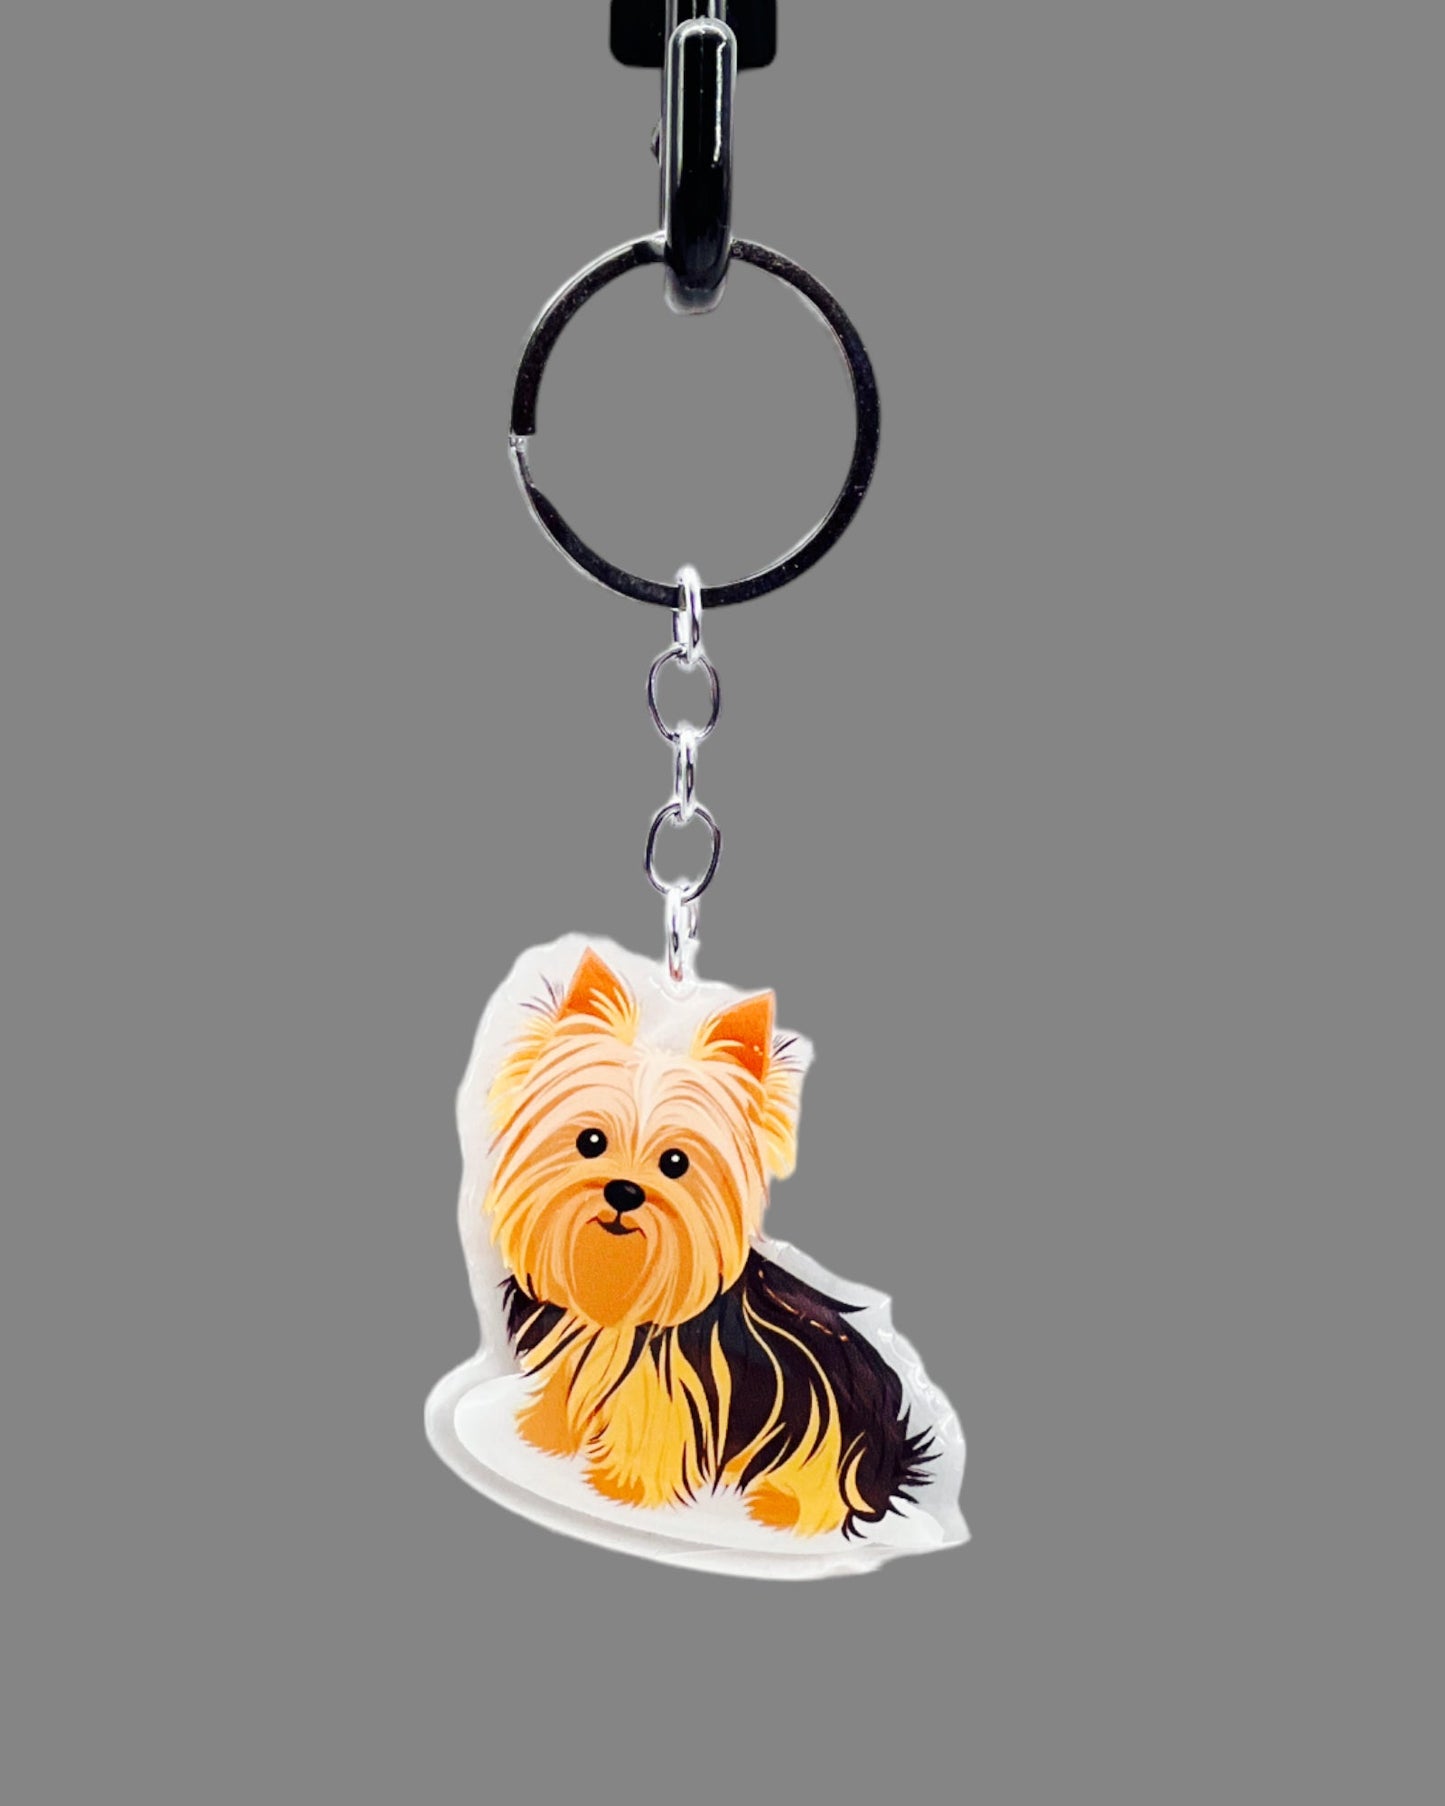 Teacup Yorkshire Terrier Dog Acrylic Keychain